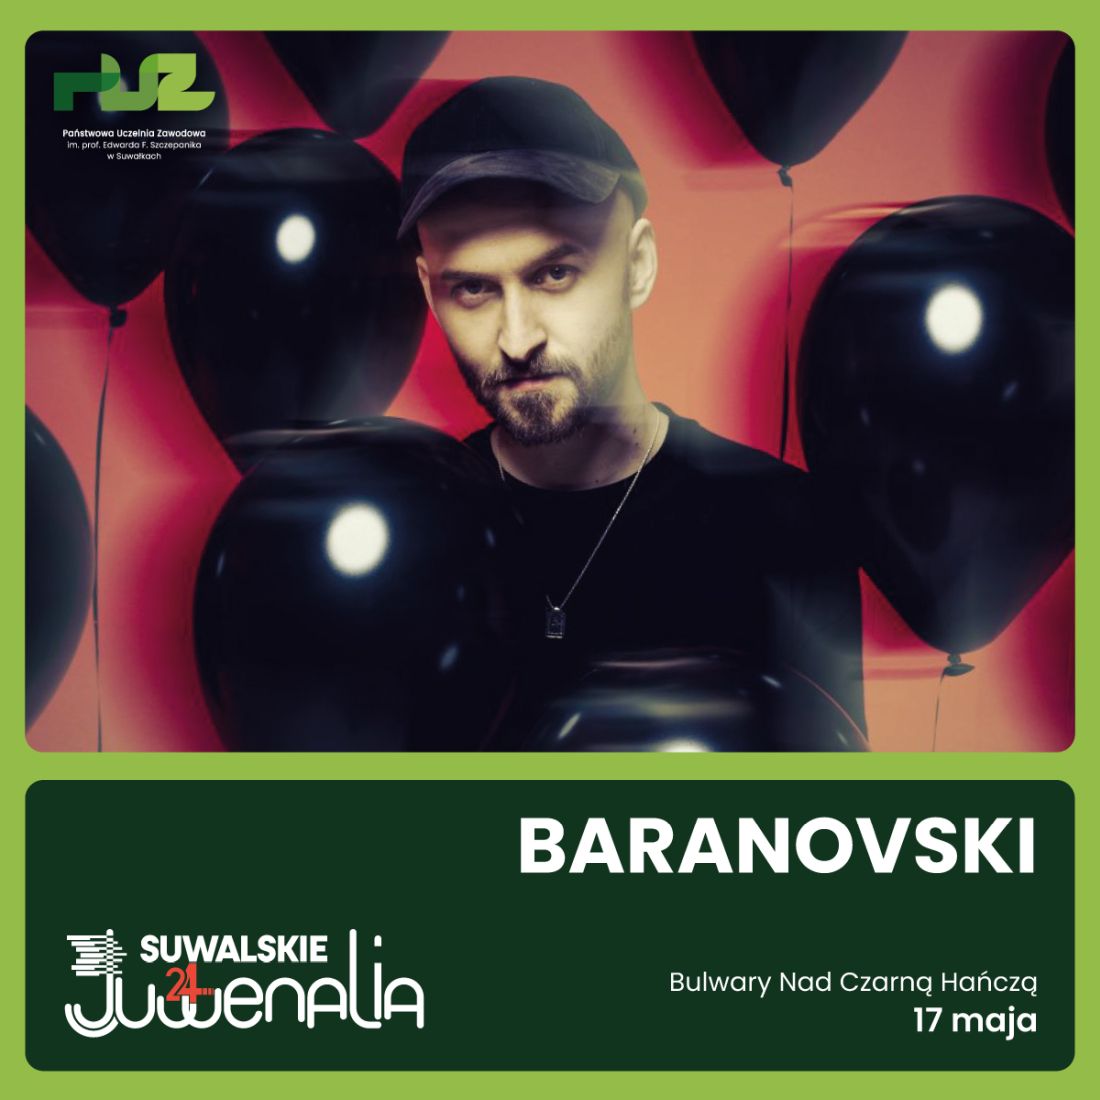 Baranowsky